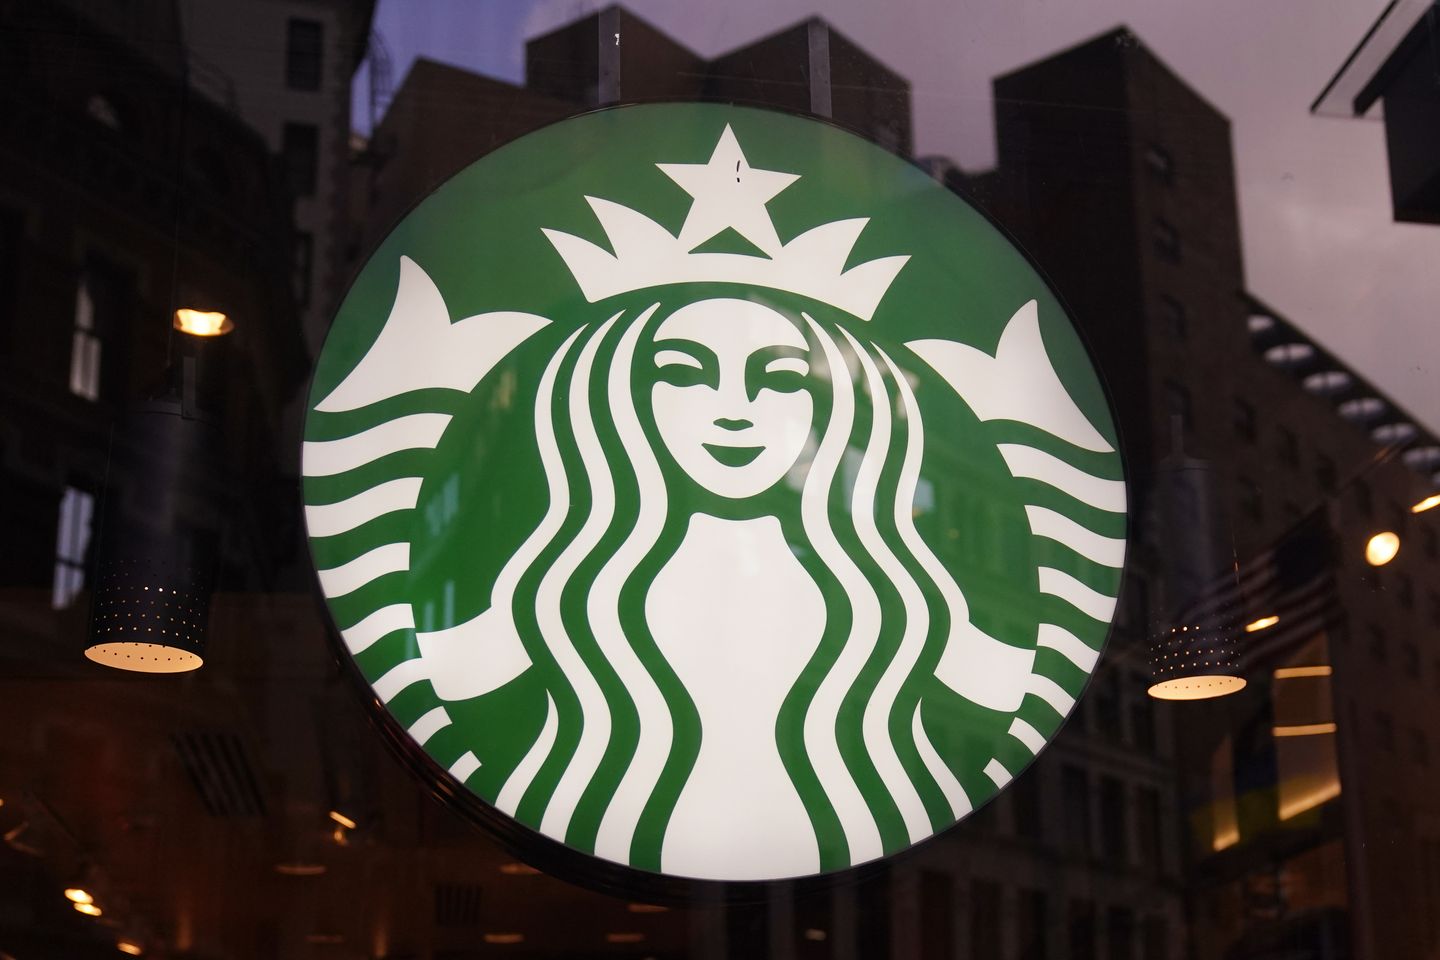 Starbucks transseksüel kabul reklamı övgü ve çevrimiçi tepkilere yol açtı